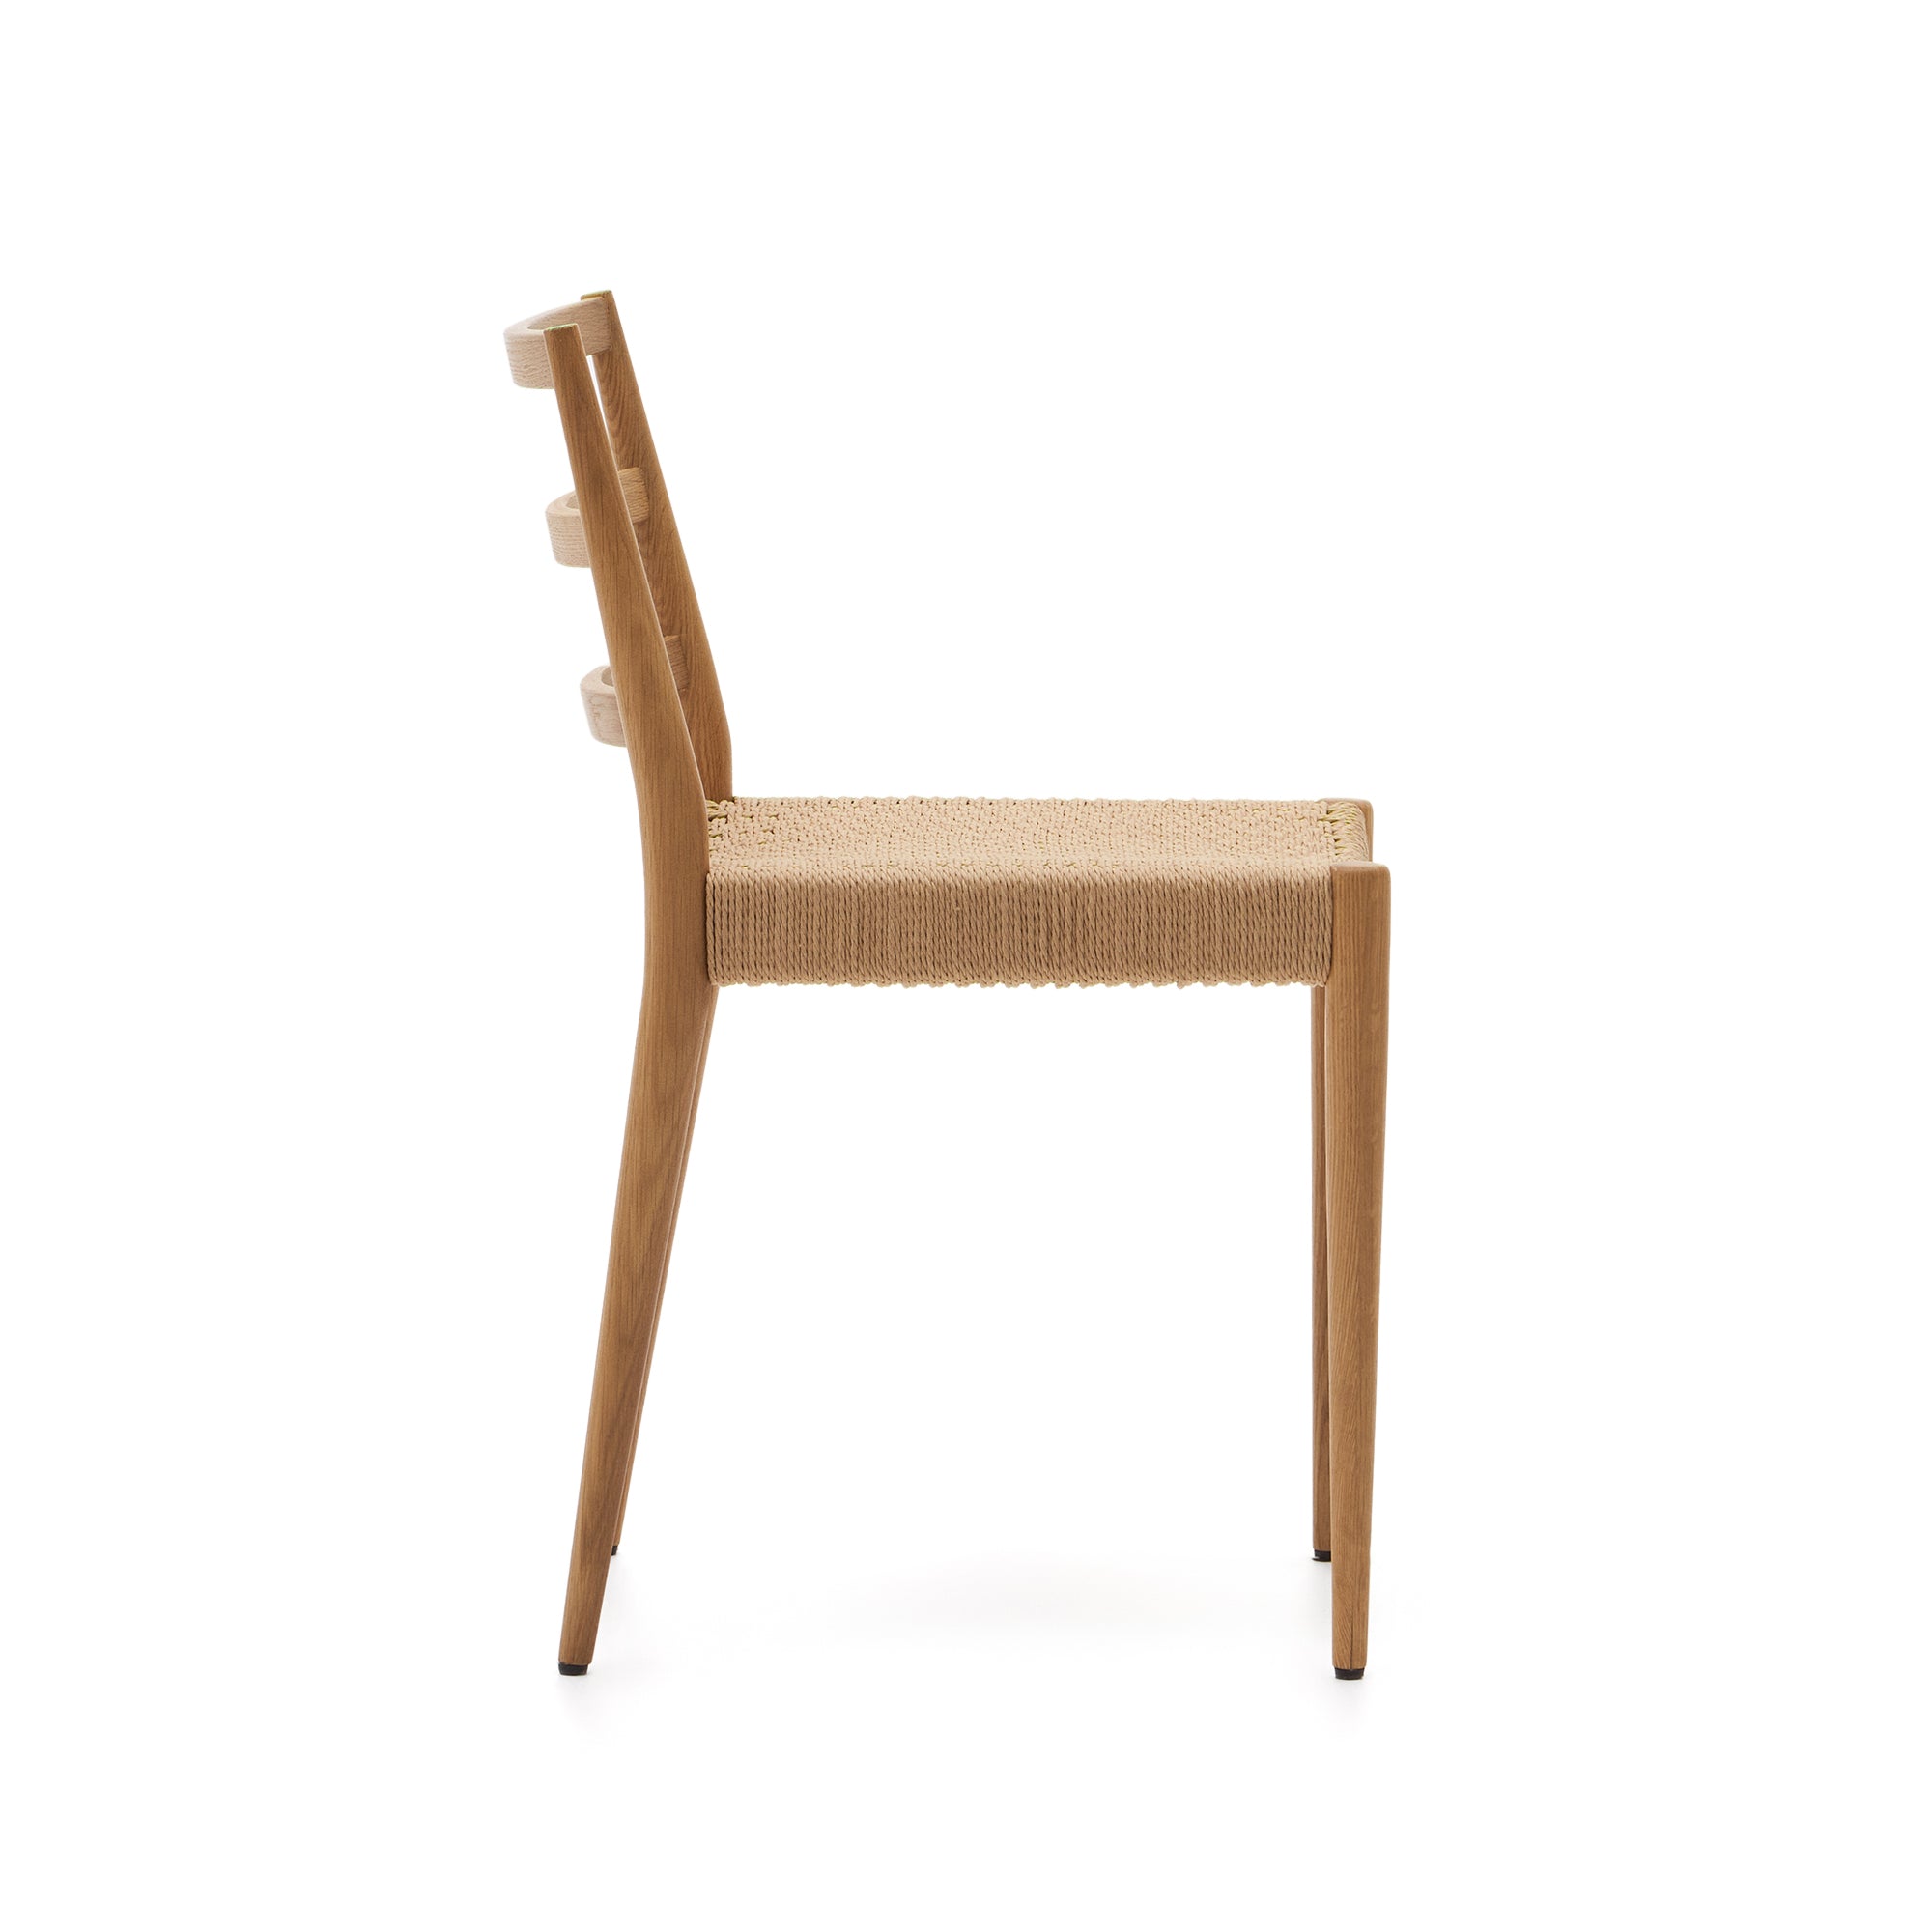 Analy szék tömör tölgyfából FSC 100%, natúr kivitelben, kötél ülőfelülettel.